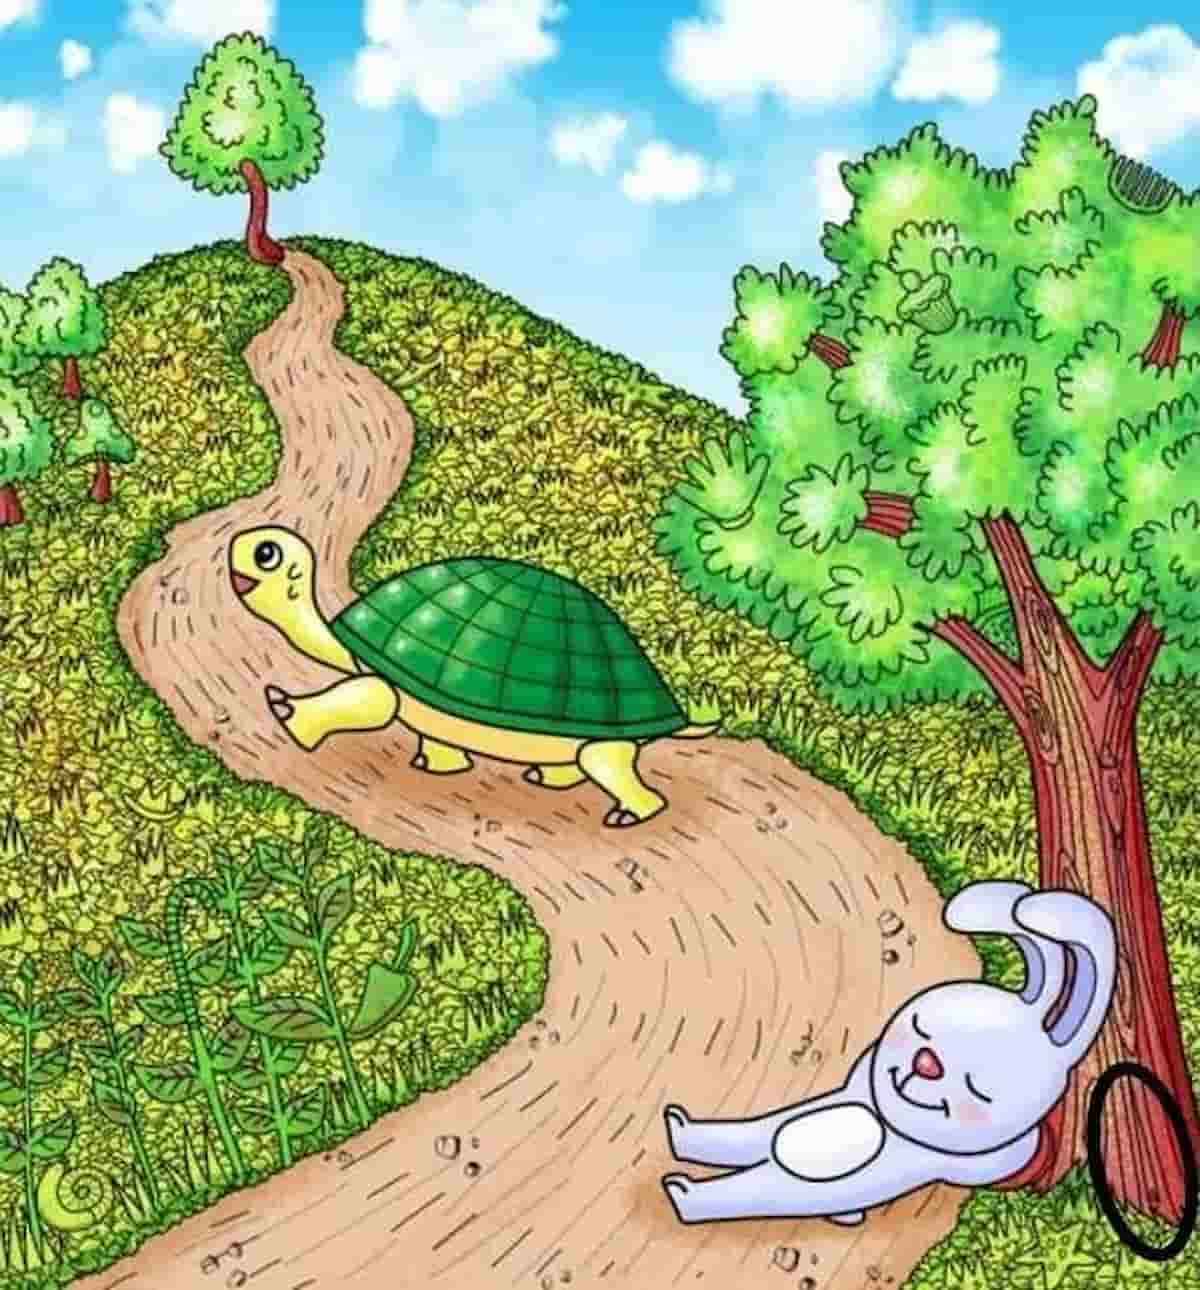 Resposta ilusão de ótica com tartaruga.